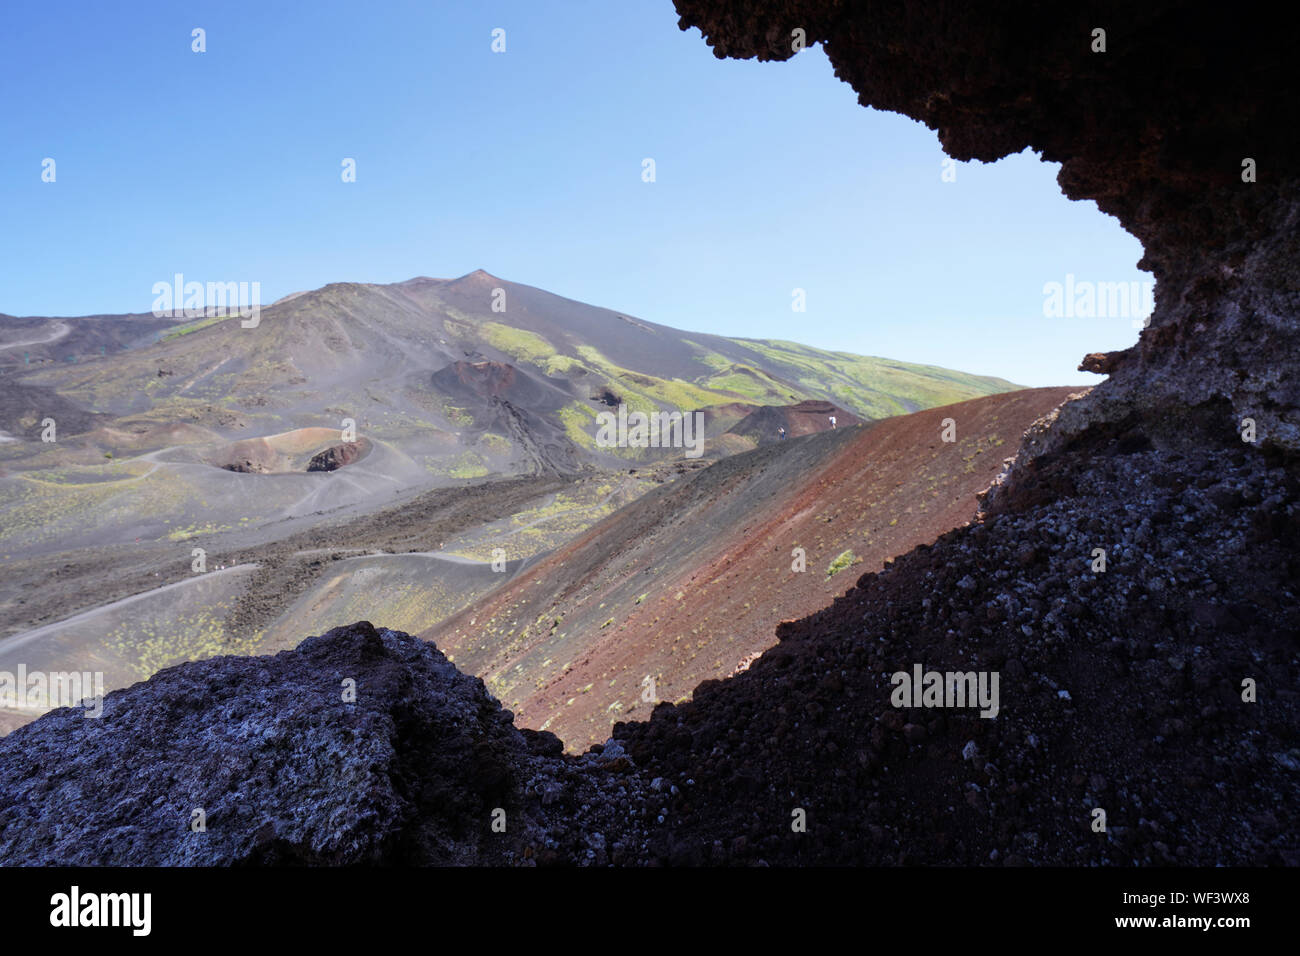 Vue du Mt. L'Etna, le plus grand volcan actif d'Europe, en Sicile, Italie Banque D'Images